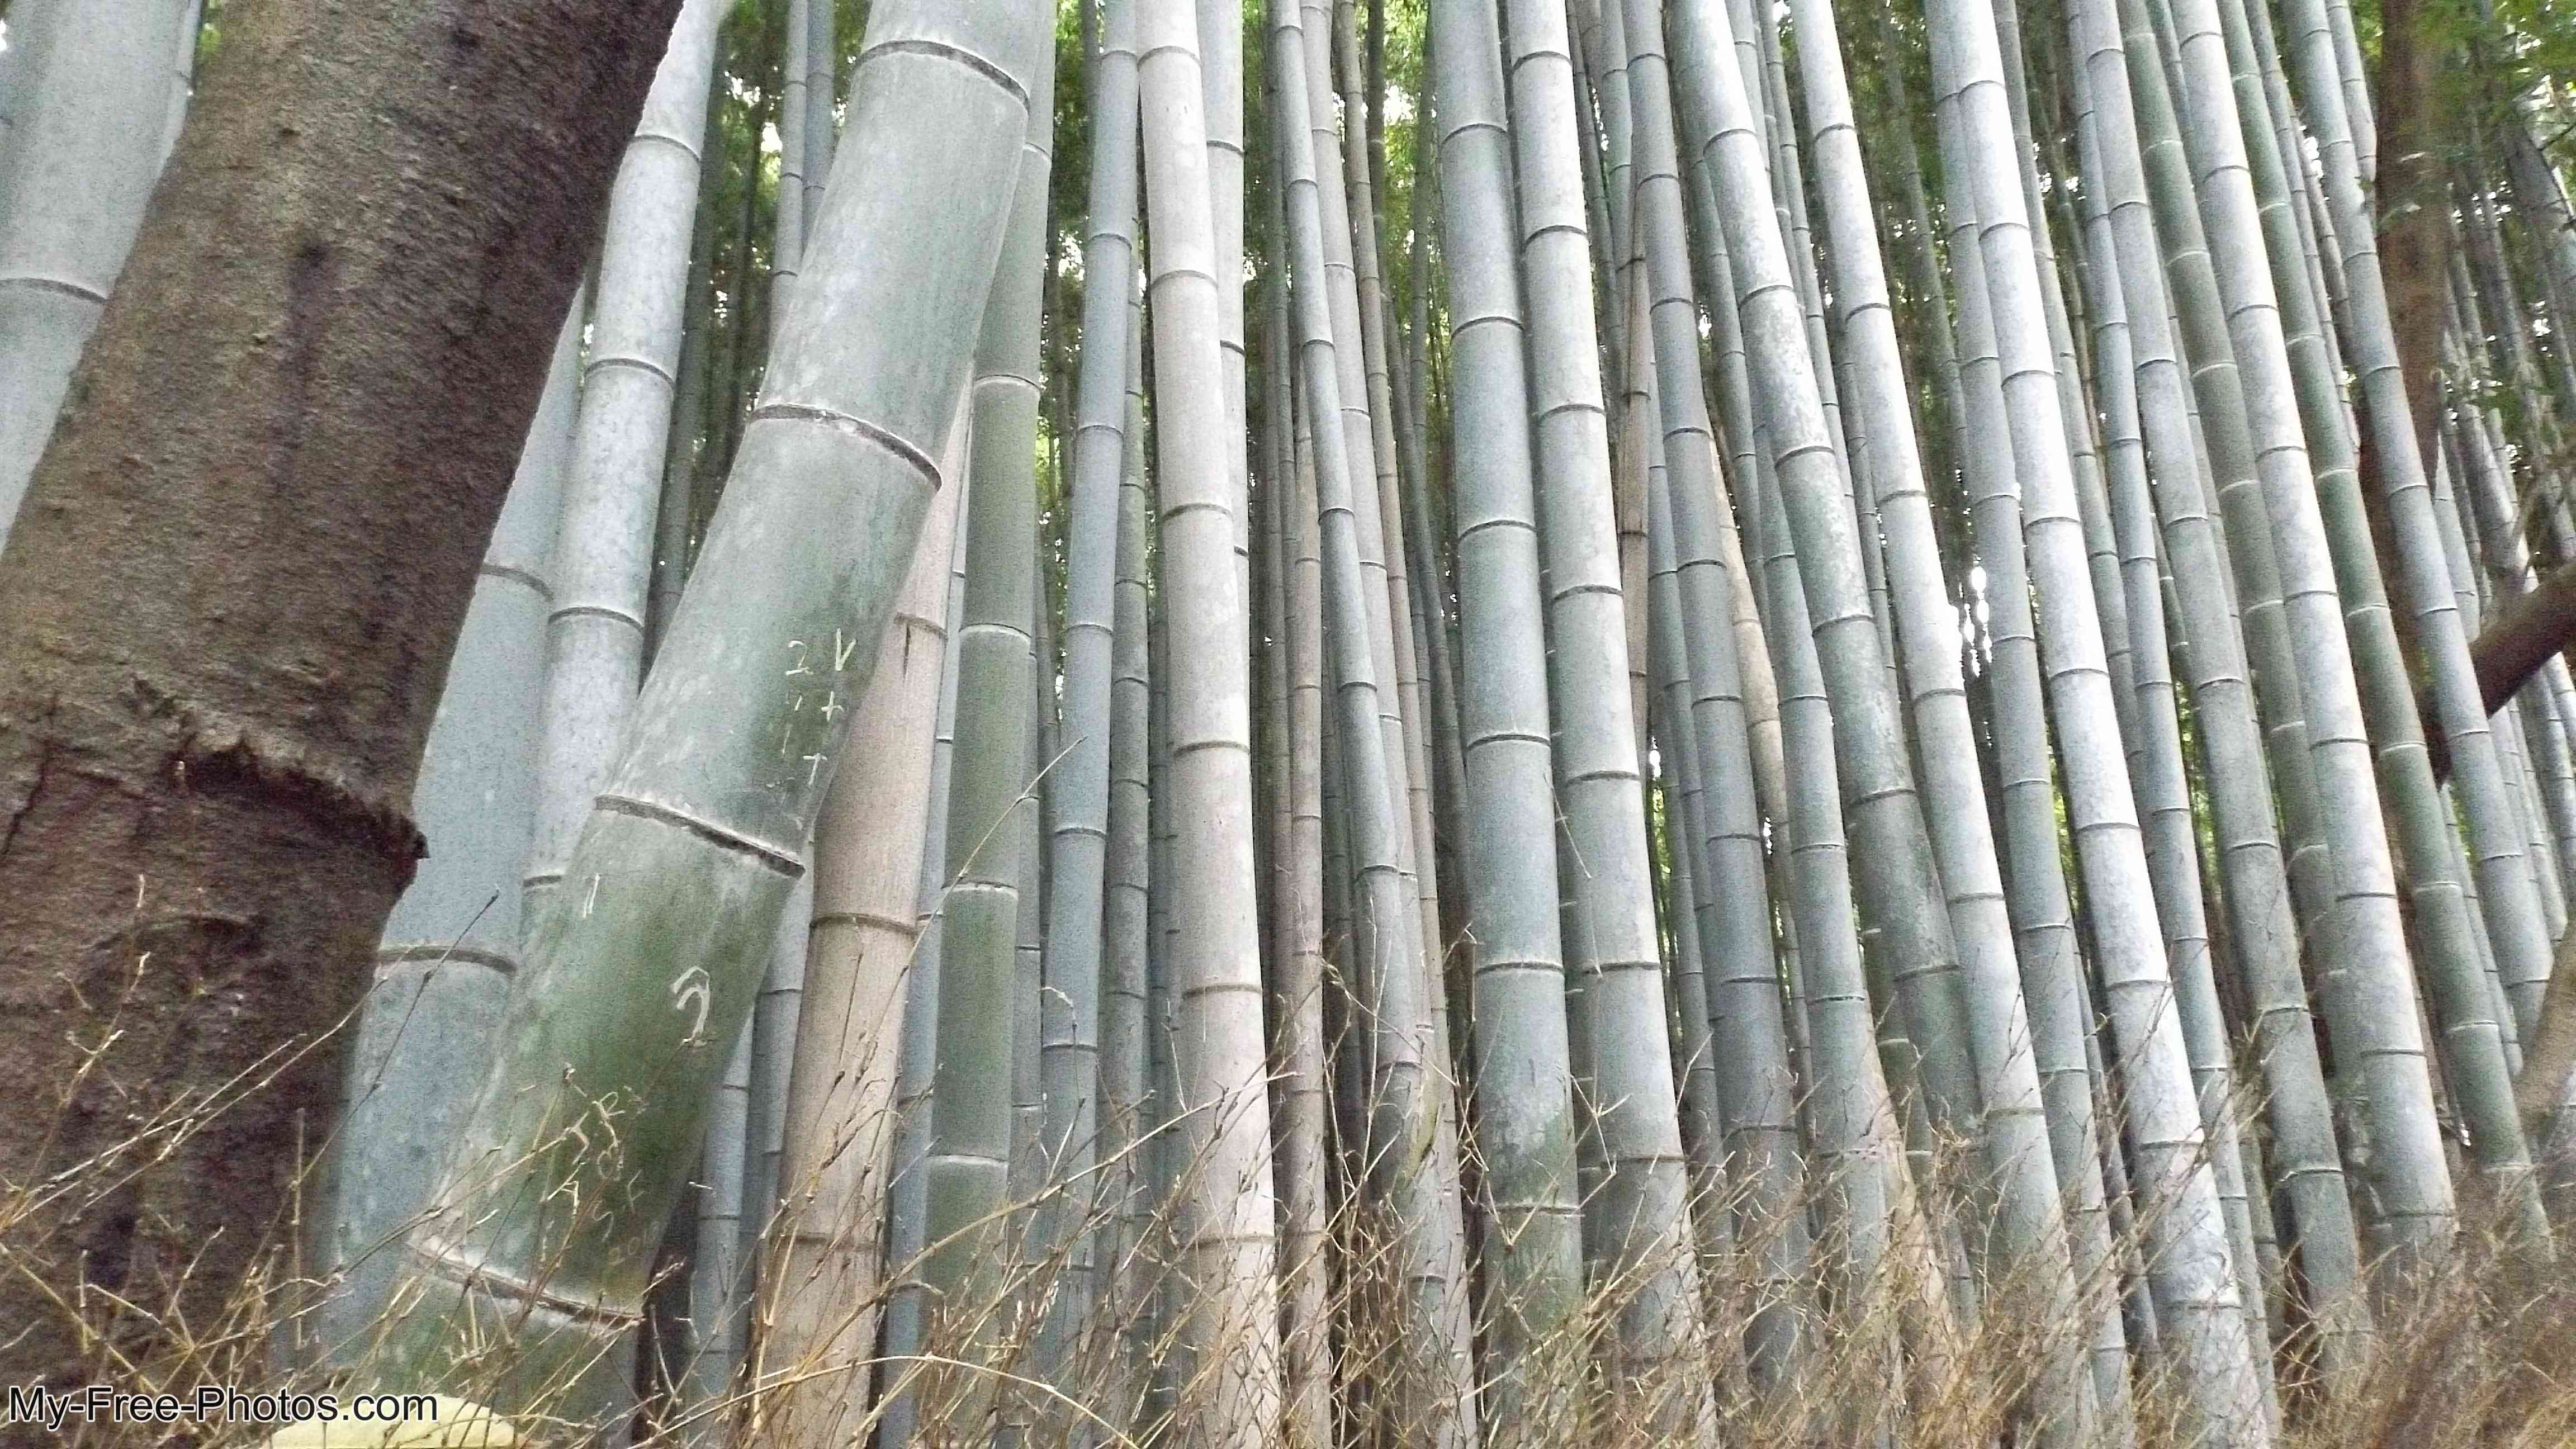 Bamboo Forest in Arashiyama